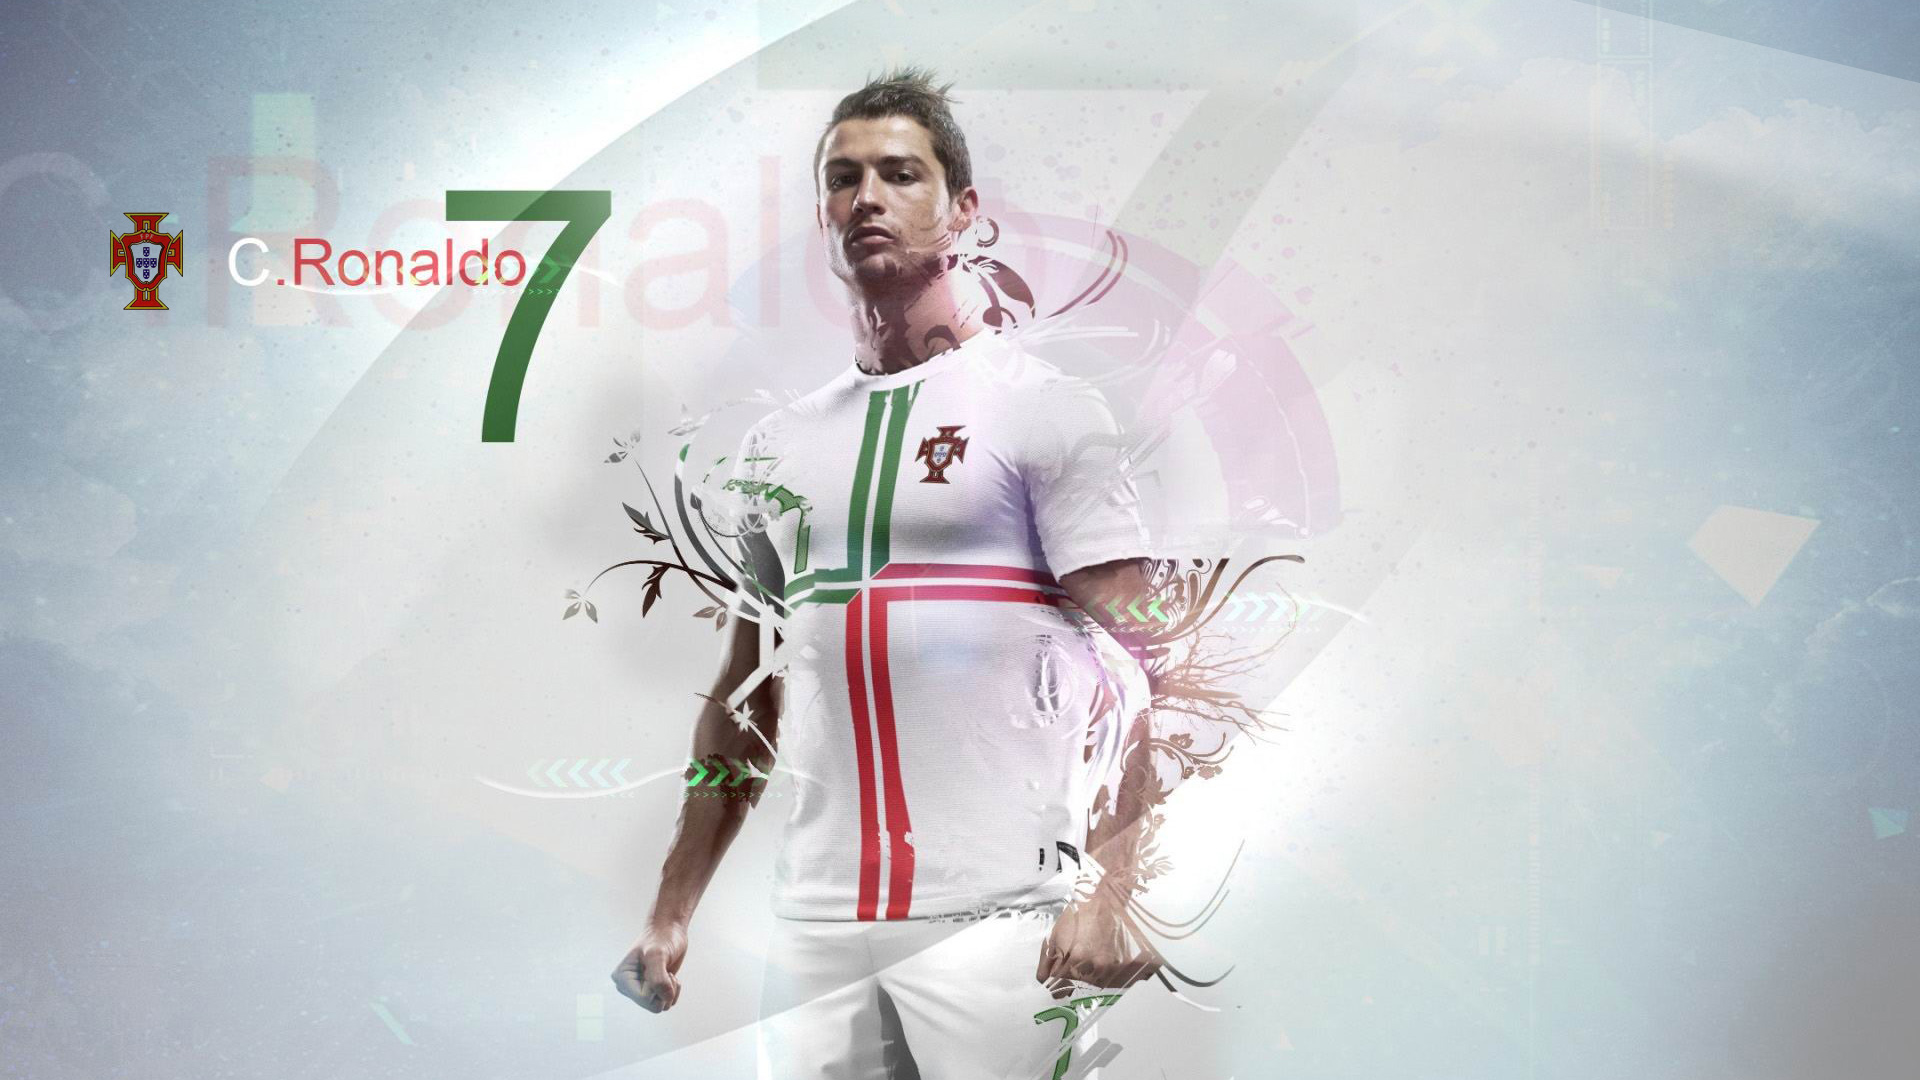 Cristiano Ronaldo Portugal Soccer Team Full HD Wallpaper 1080p